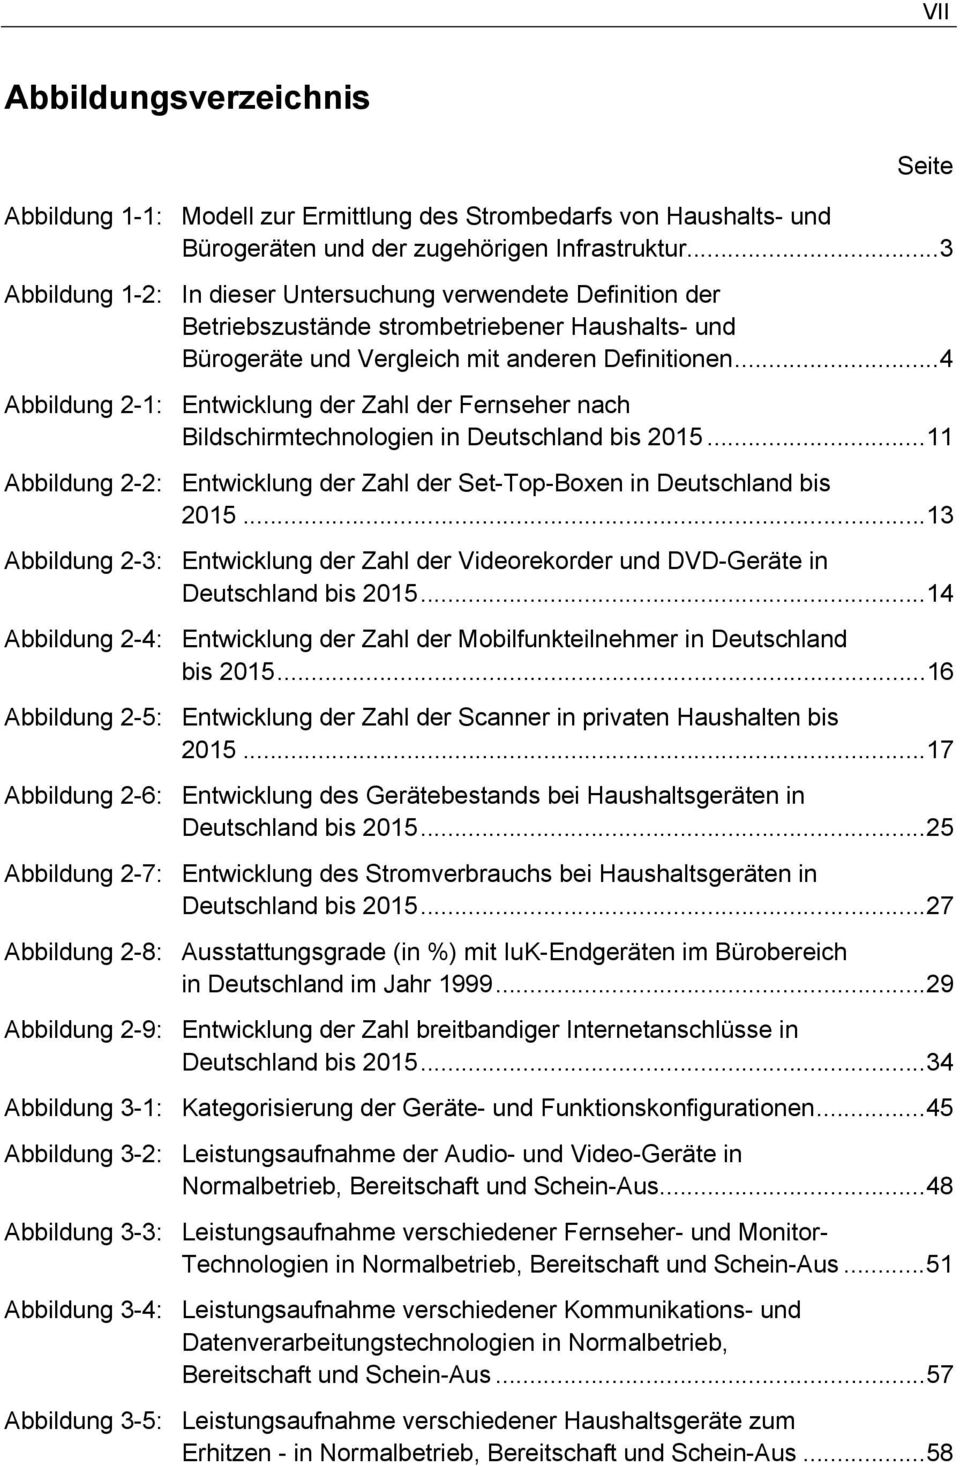 ..4 Abbildung 2-1: Entwicklung der Zahl der Fernseher nach Bildschirmtechnologien in Deutschland bis 2015...11 Abbildung 2-2: Entwicklung der Zahl der Set-Top-Boxen in Deutschland bis 2015.